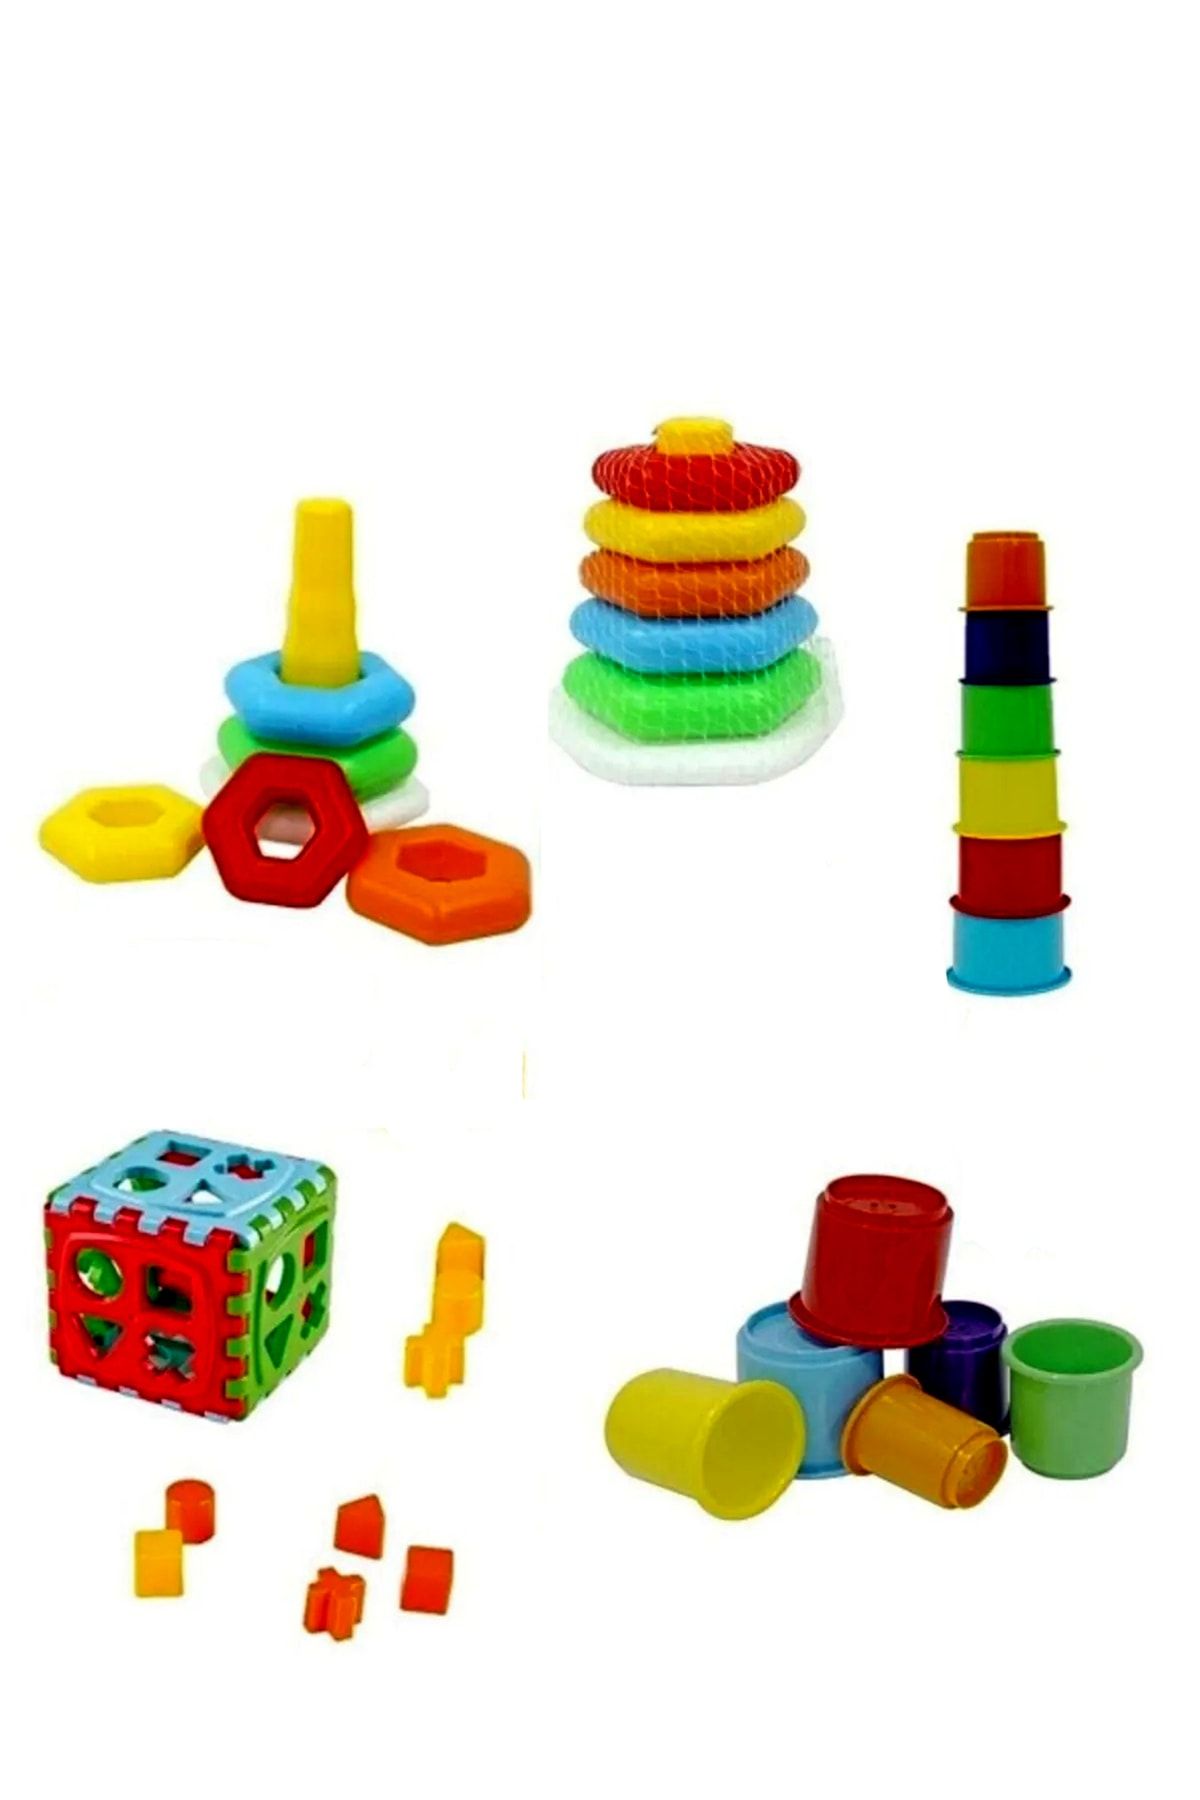 SAZE Hediyelik Sevimli Kule Oyunu Bultak Küp Renkli Altıgen Halkalar Eğitici Oyuncak Set Oyun Setimiz